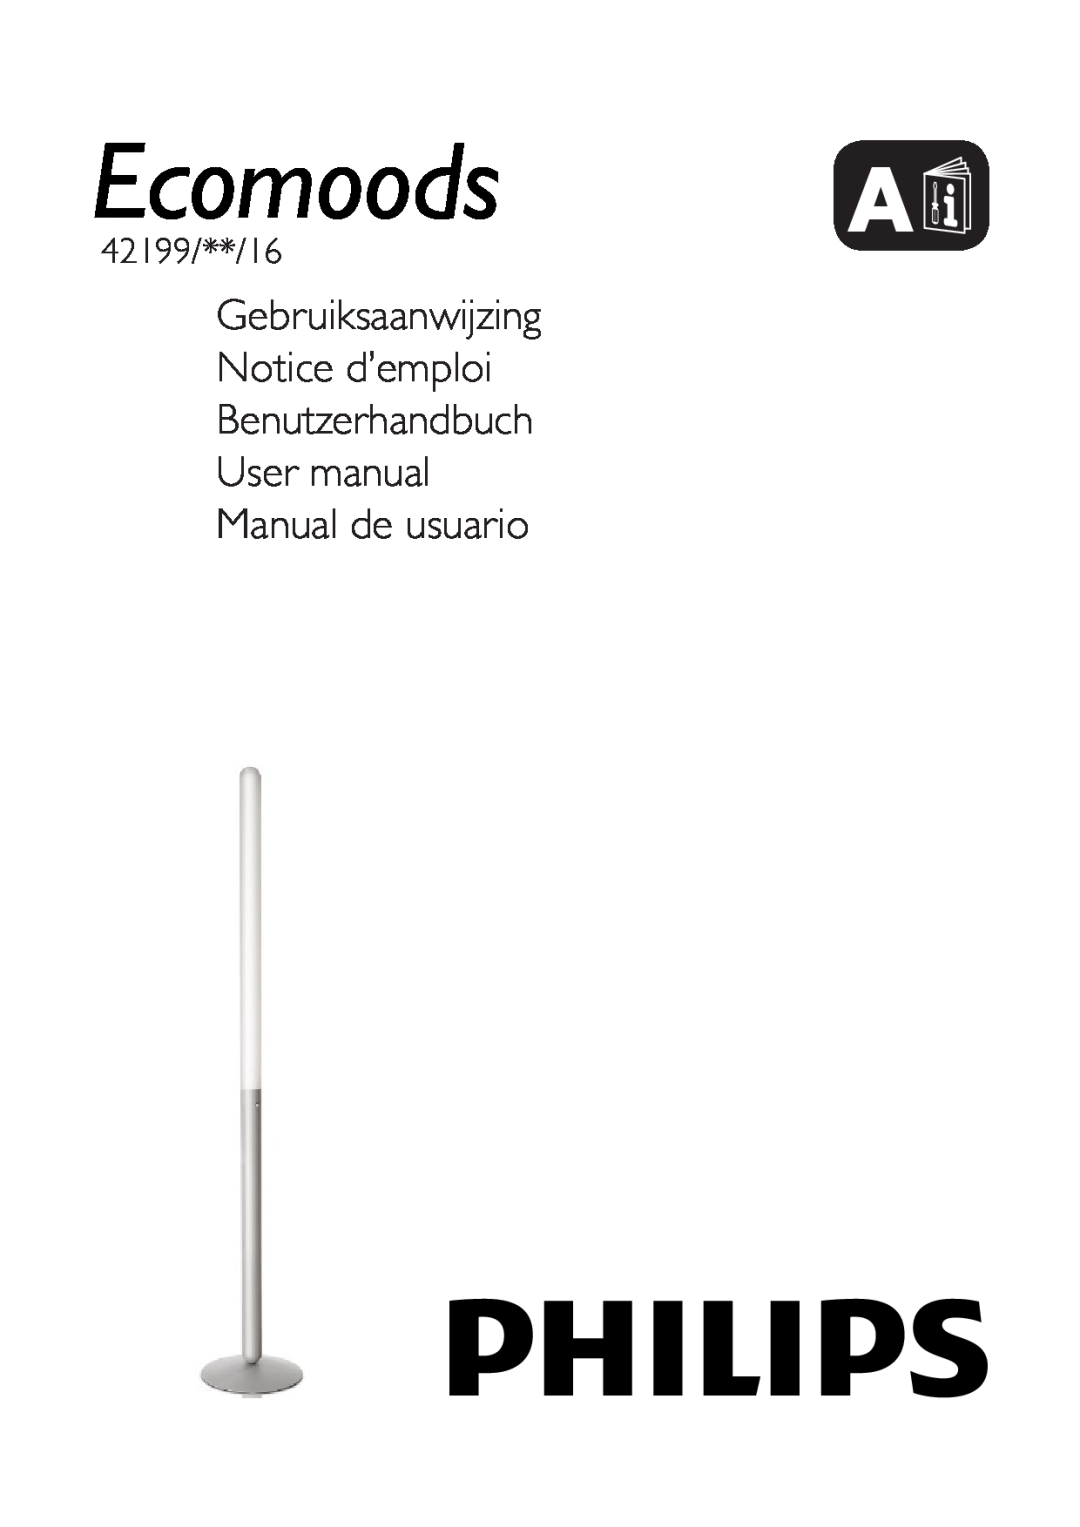 Philips 42199/87/16 user manual Gebruiksaanwijzing Notice d’emploi, Benutzerhandbuch User manual Manual de usuario 